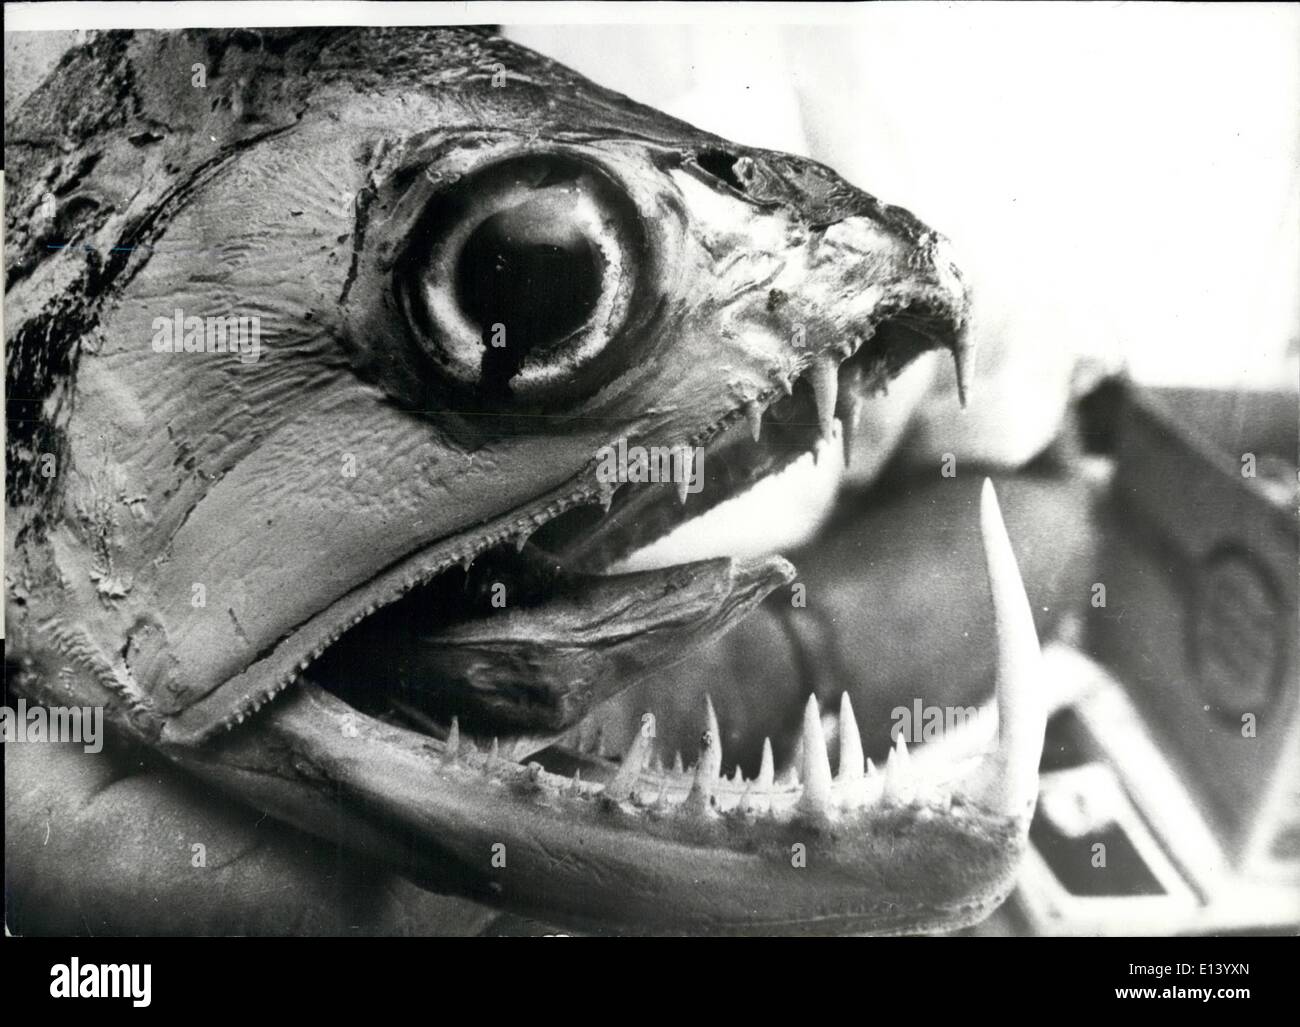 27 mar 2012 - Nome voluto per grottesco nuovi pesci inediti da uomo, questo pesce grottesca è la più recente scoperta sul nostro pianeta. Il mini-monster con la sua temibile boccone di denti è stato catturato durante un safari in un fiume remoto del Brasile. Il pesce è ancora senza nome. Foto Stock